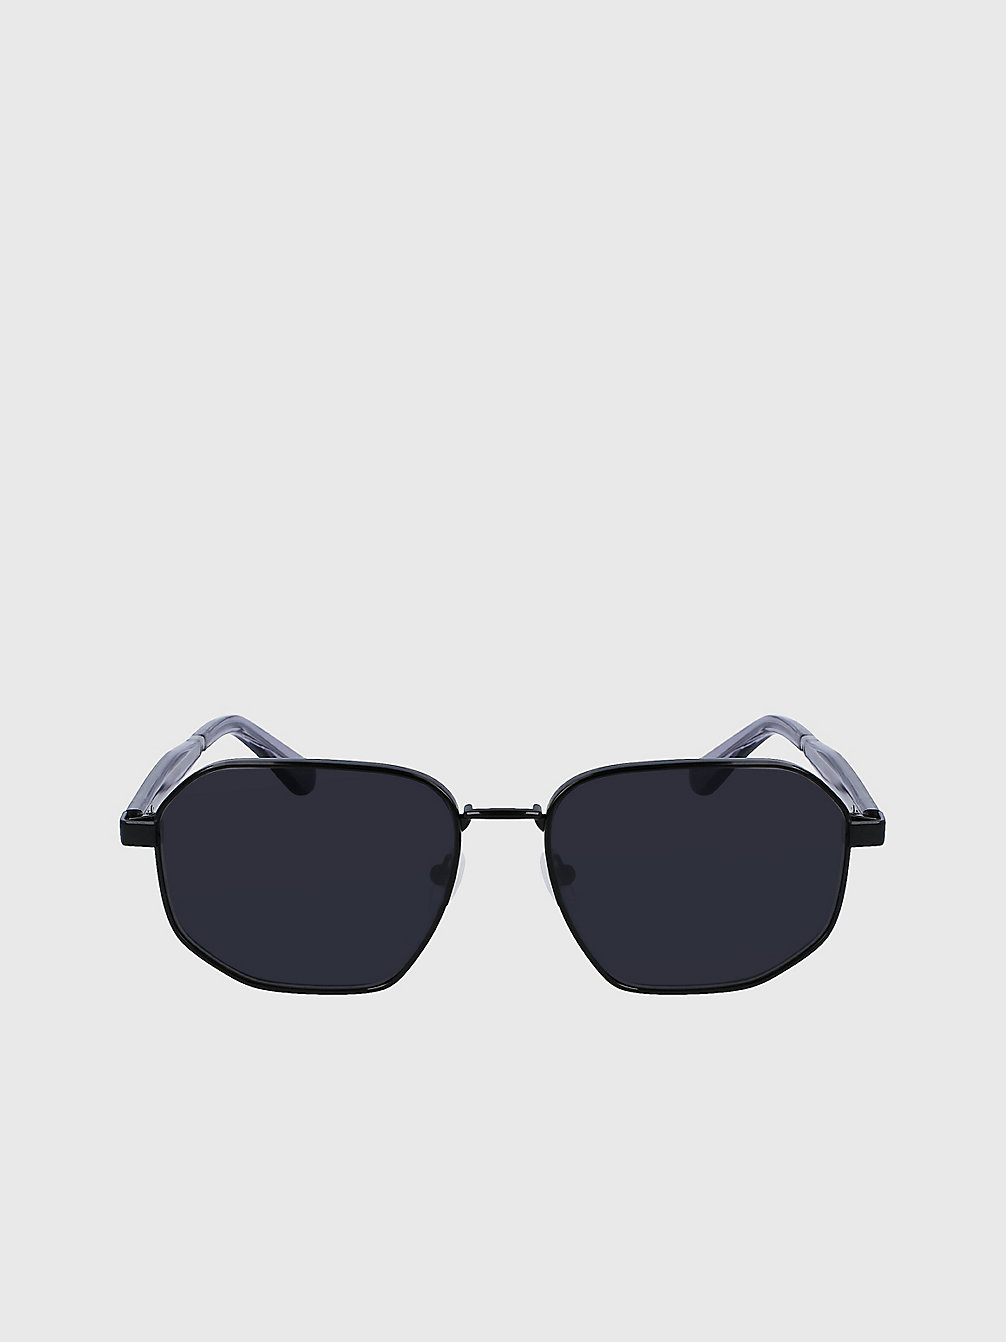 BLACK > Rechteckige Sonnenbrille Ck23102s > undefined Herren - Calvin Klein